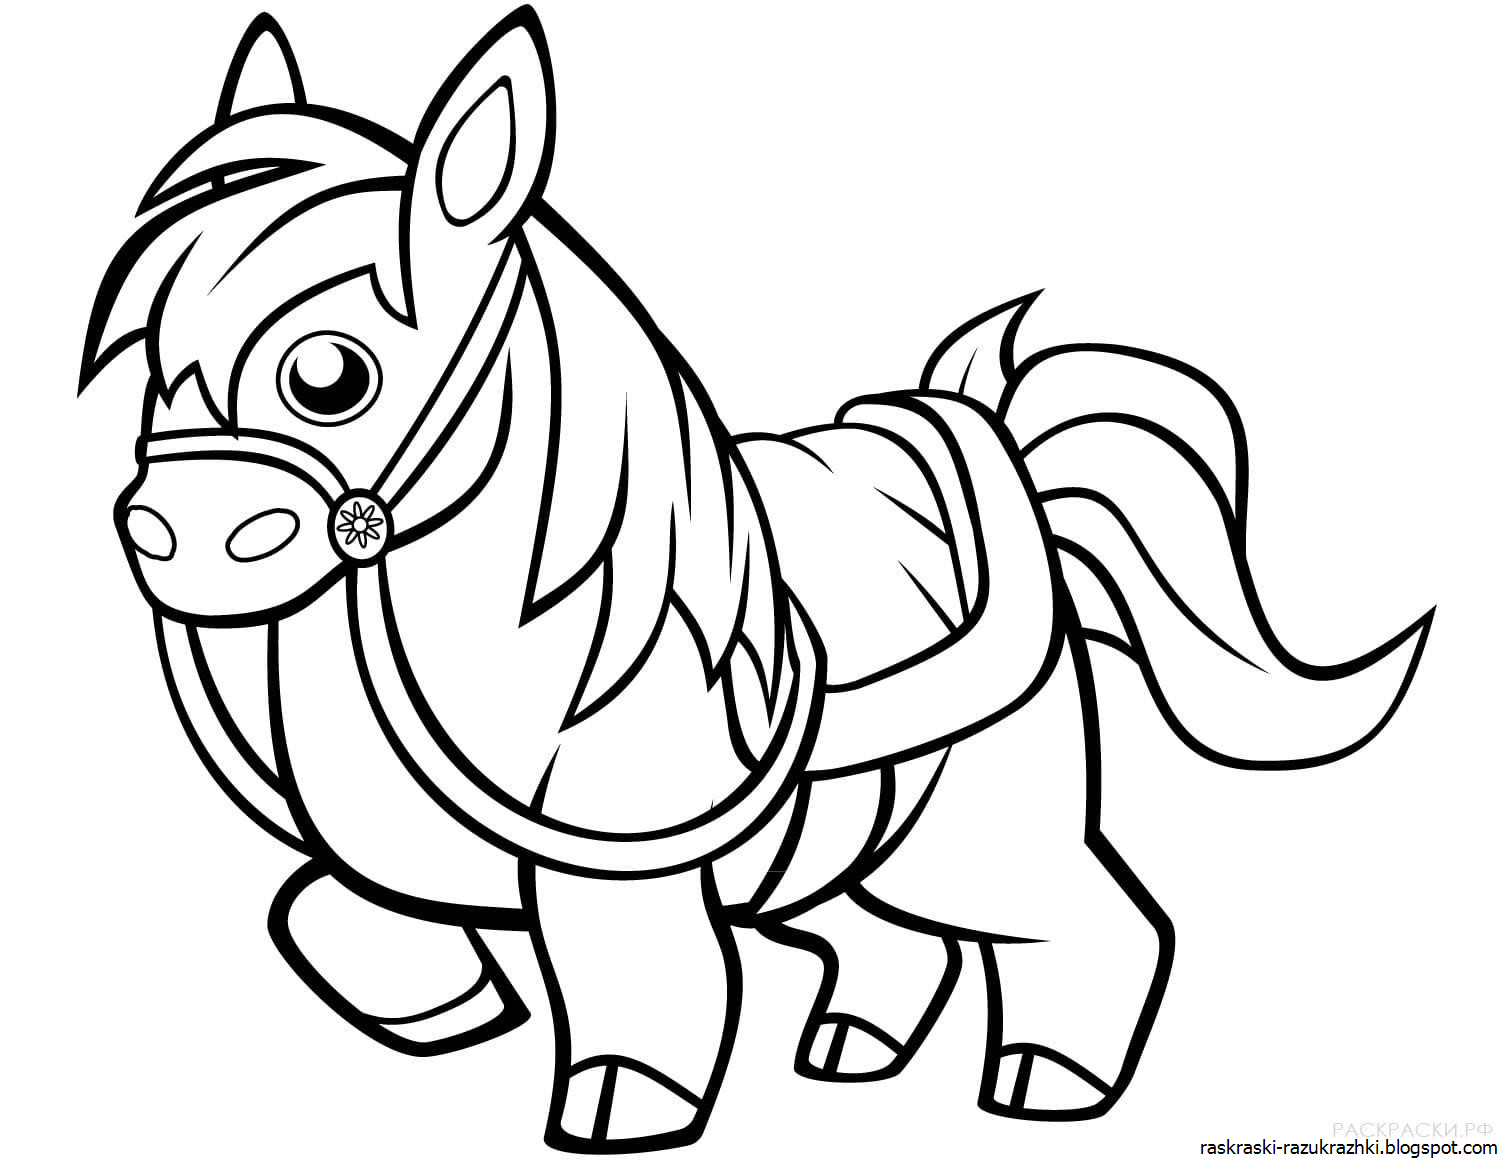 Раскрашиваем лошадку. Раскраска. Лошадка. Лошадка раскраска для детей. Раскраска лошадка пони. Лошадь раскраска для детей.